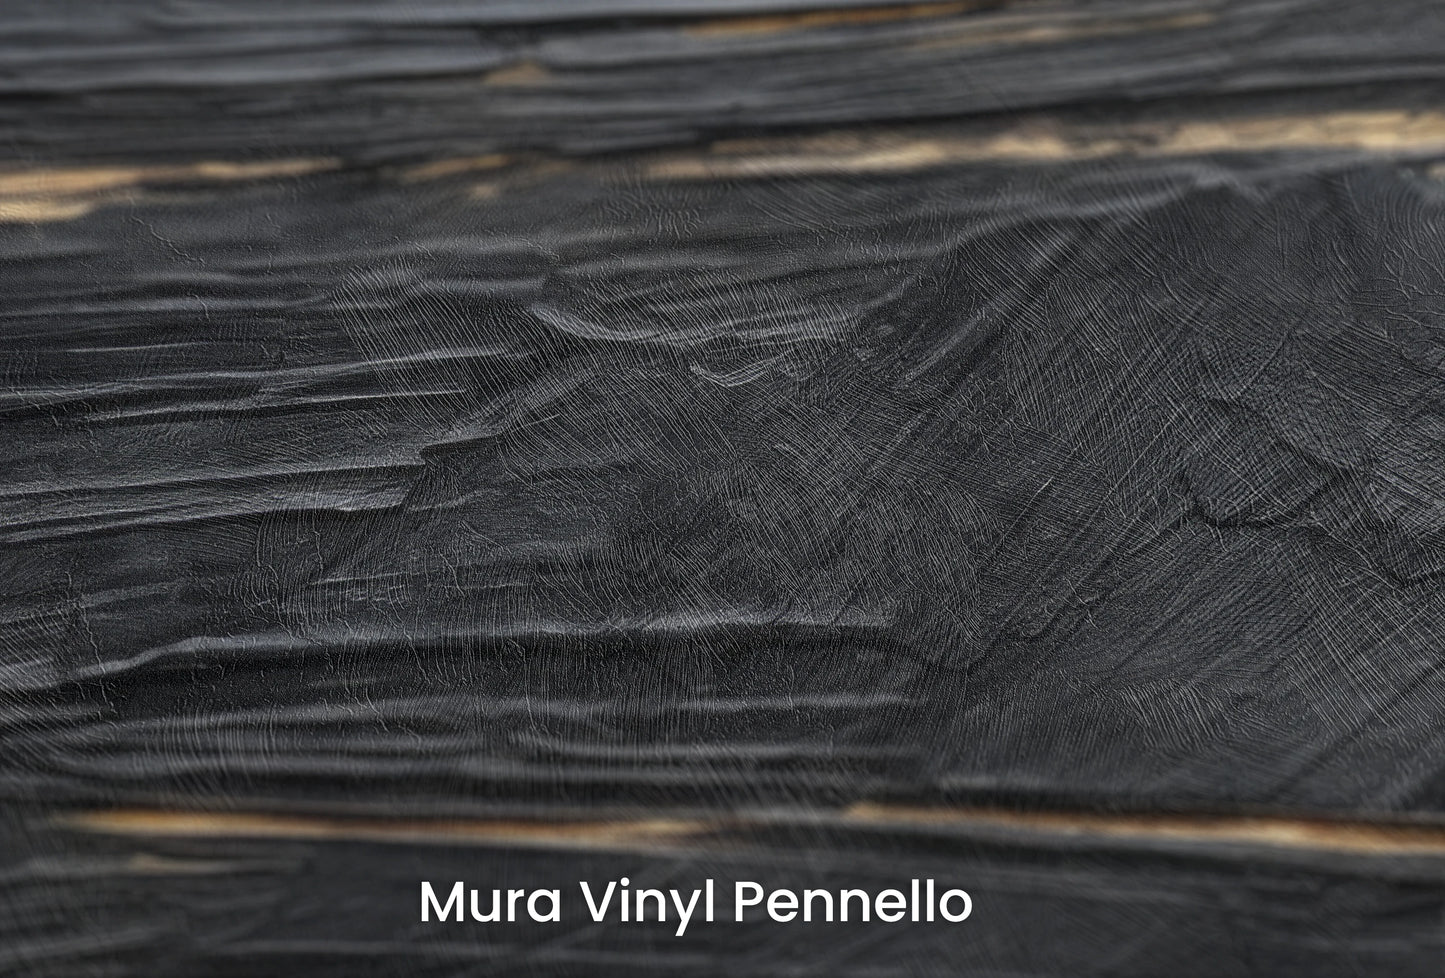 Zbliżenie na artystyczną fototapetę o nazwie Black Gold Elegance na podłożu Mura Vinyl Pennello - faktura pociągnięć pędzla malarskiego.